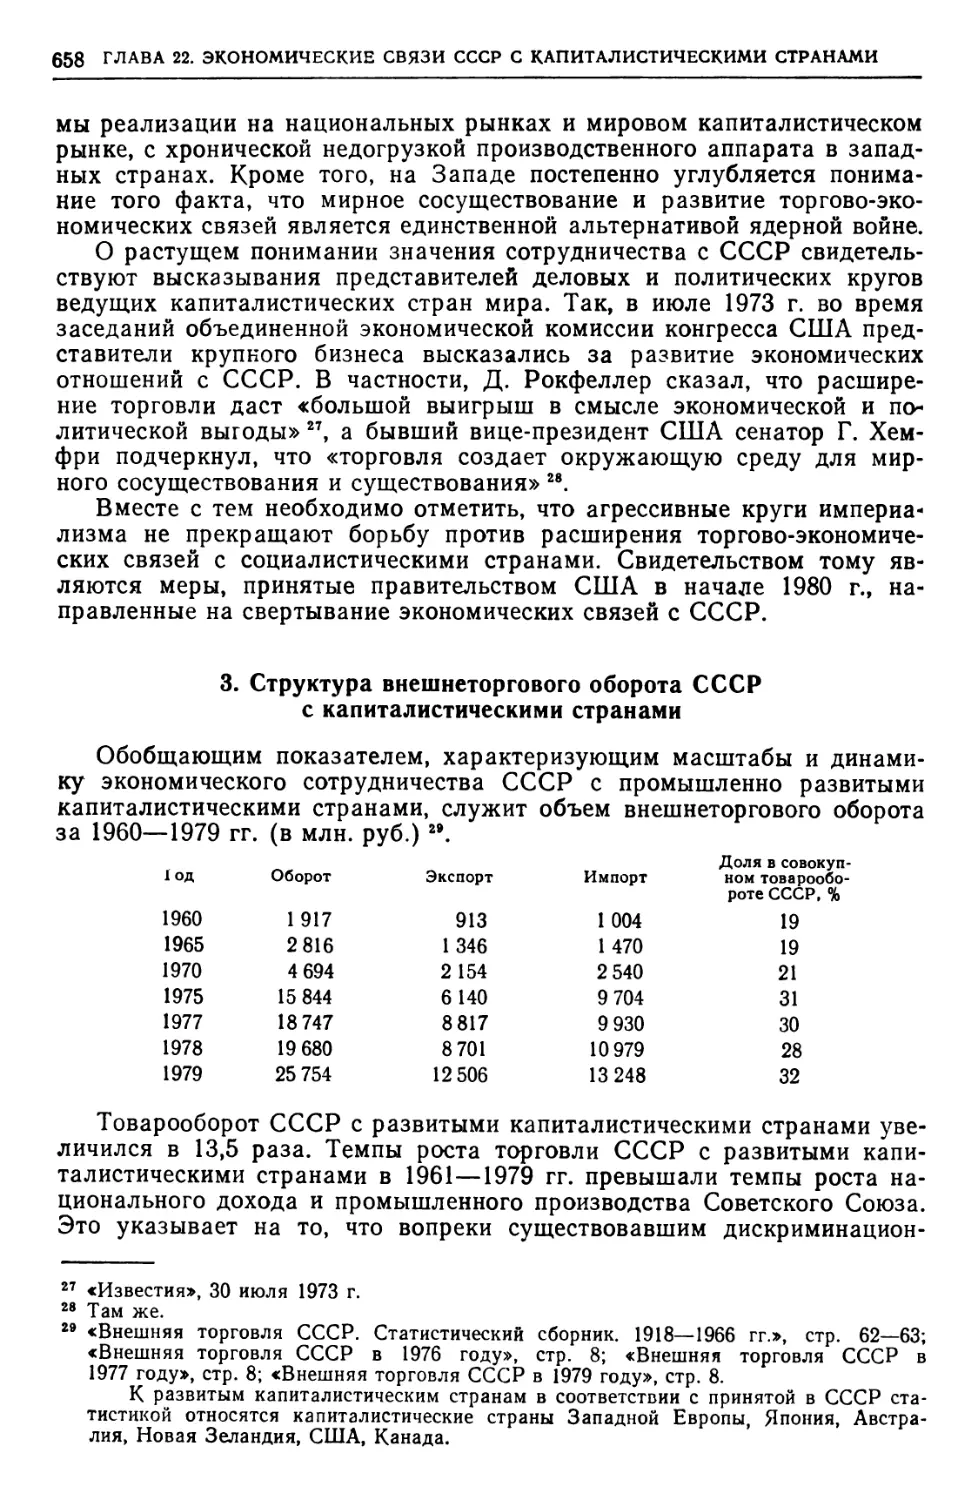 3. Структура внешнеторгового оборота СССР с капиталистическими странами